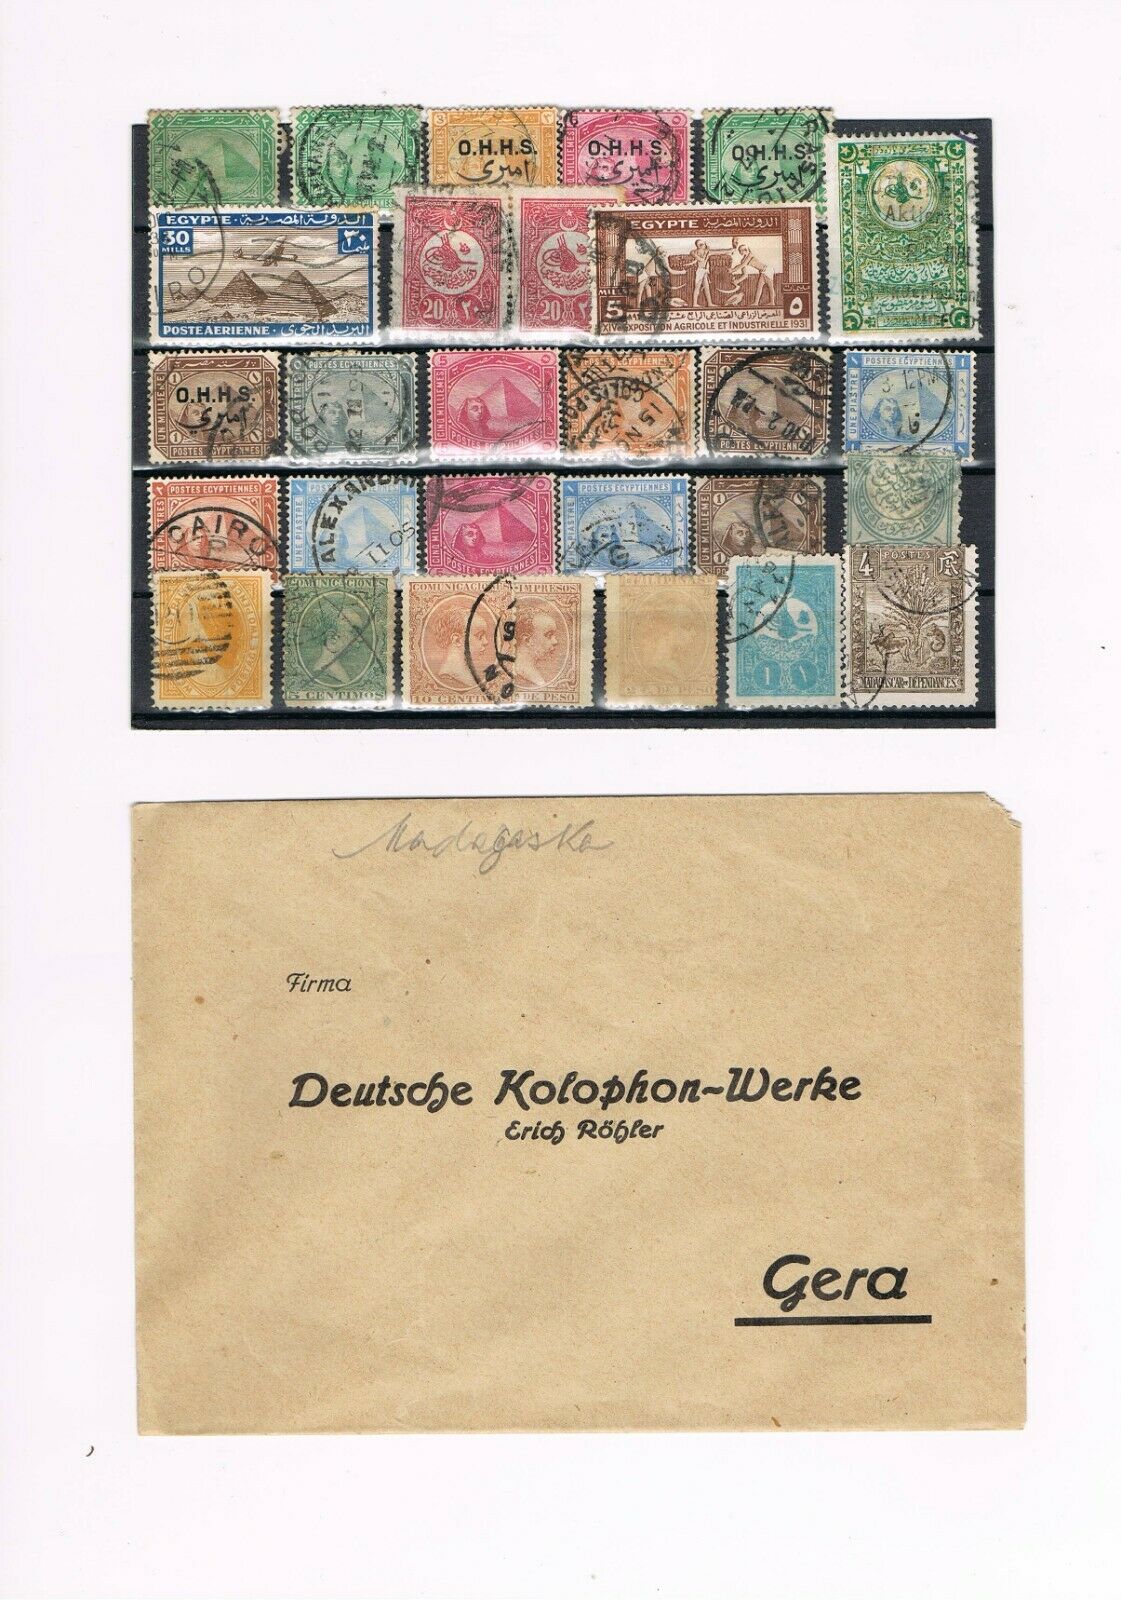 Ägypten - Briefmarken - Deutsche Kolophon-werke - Filipinas